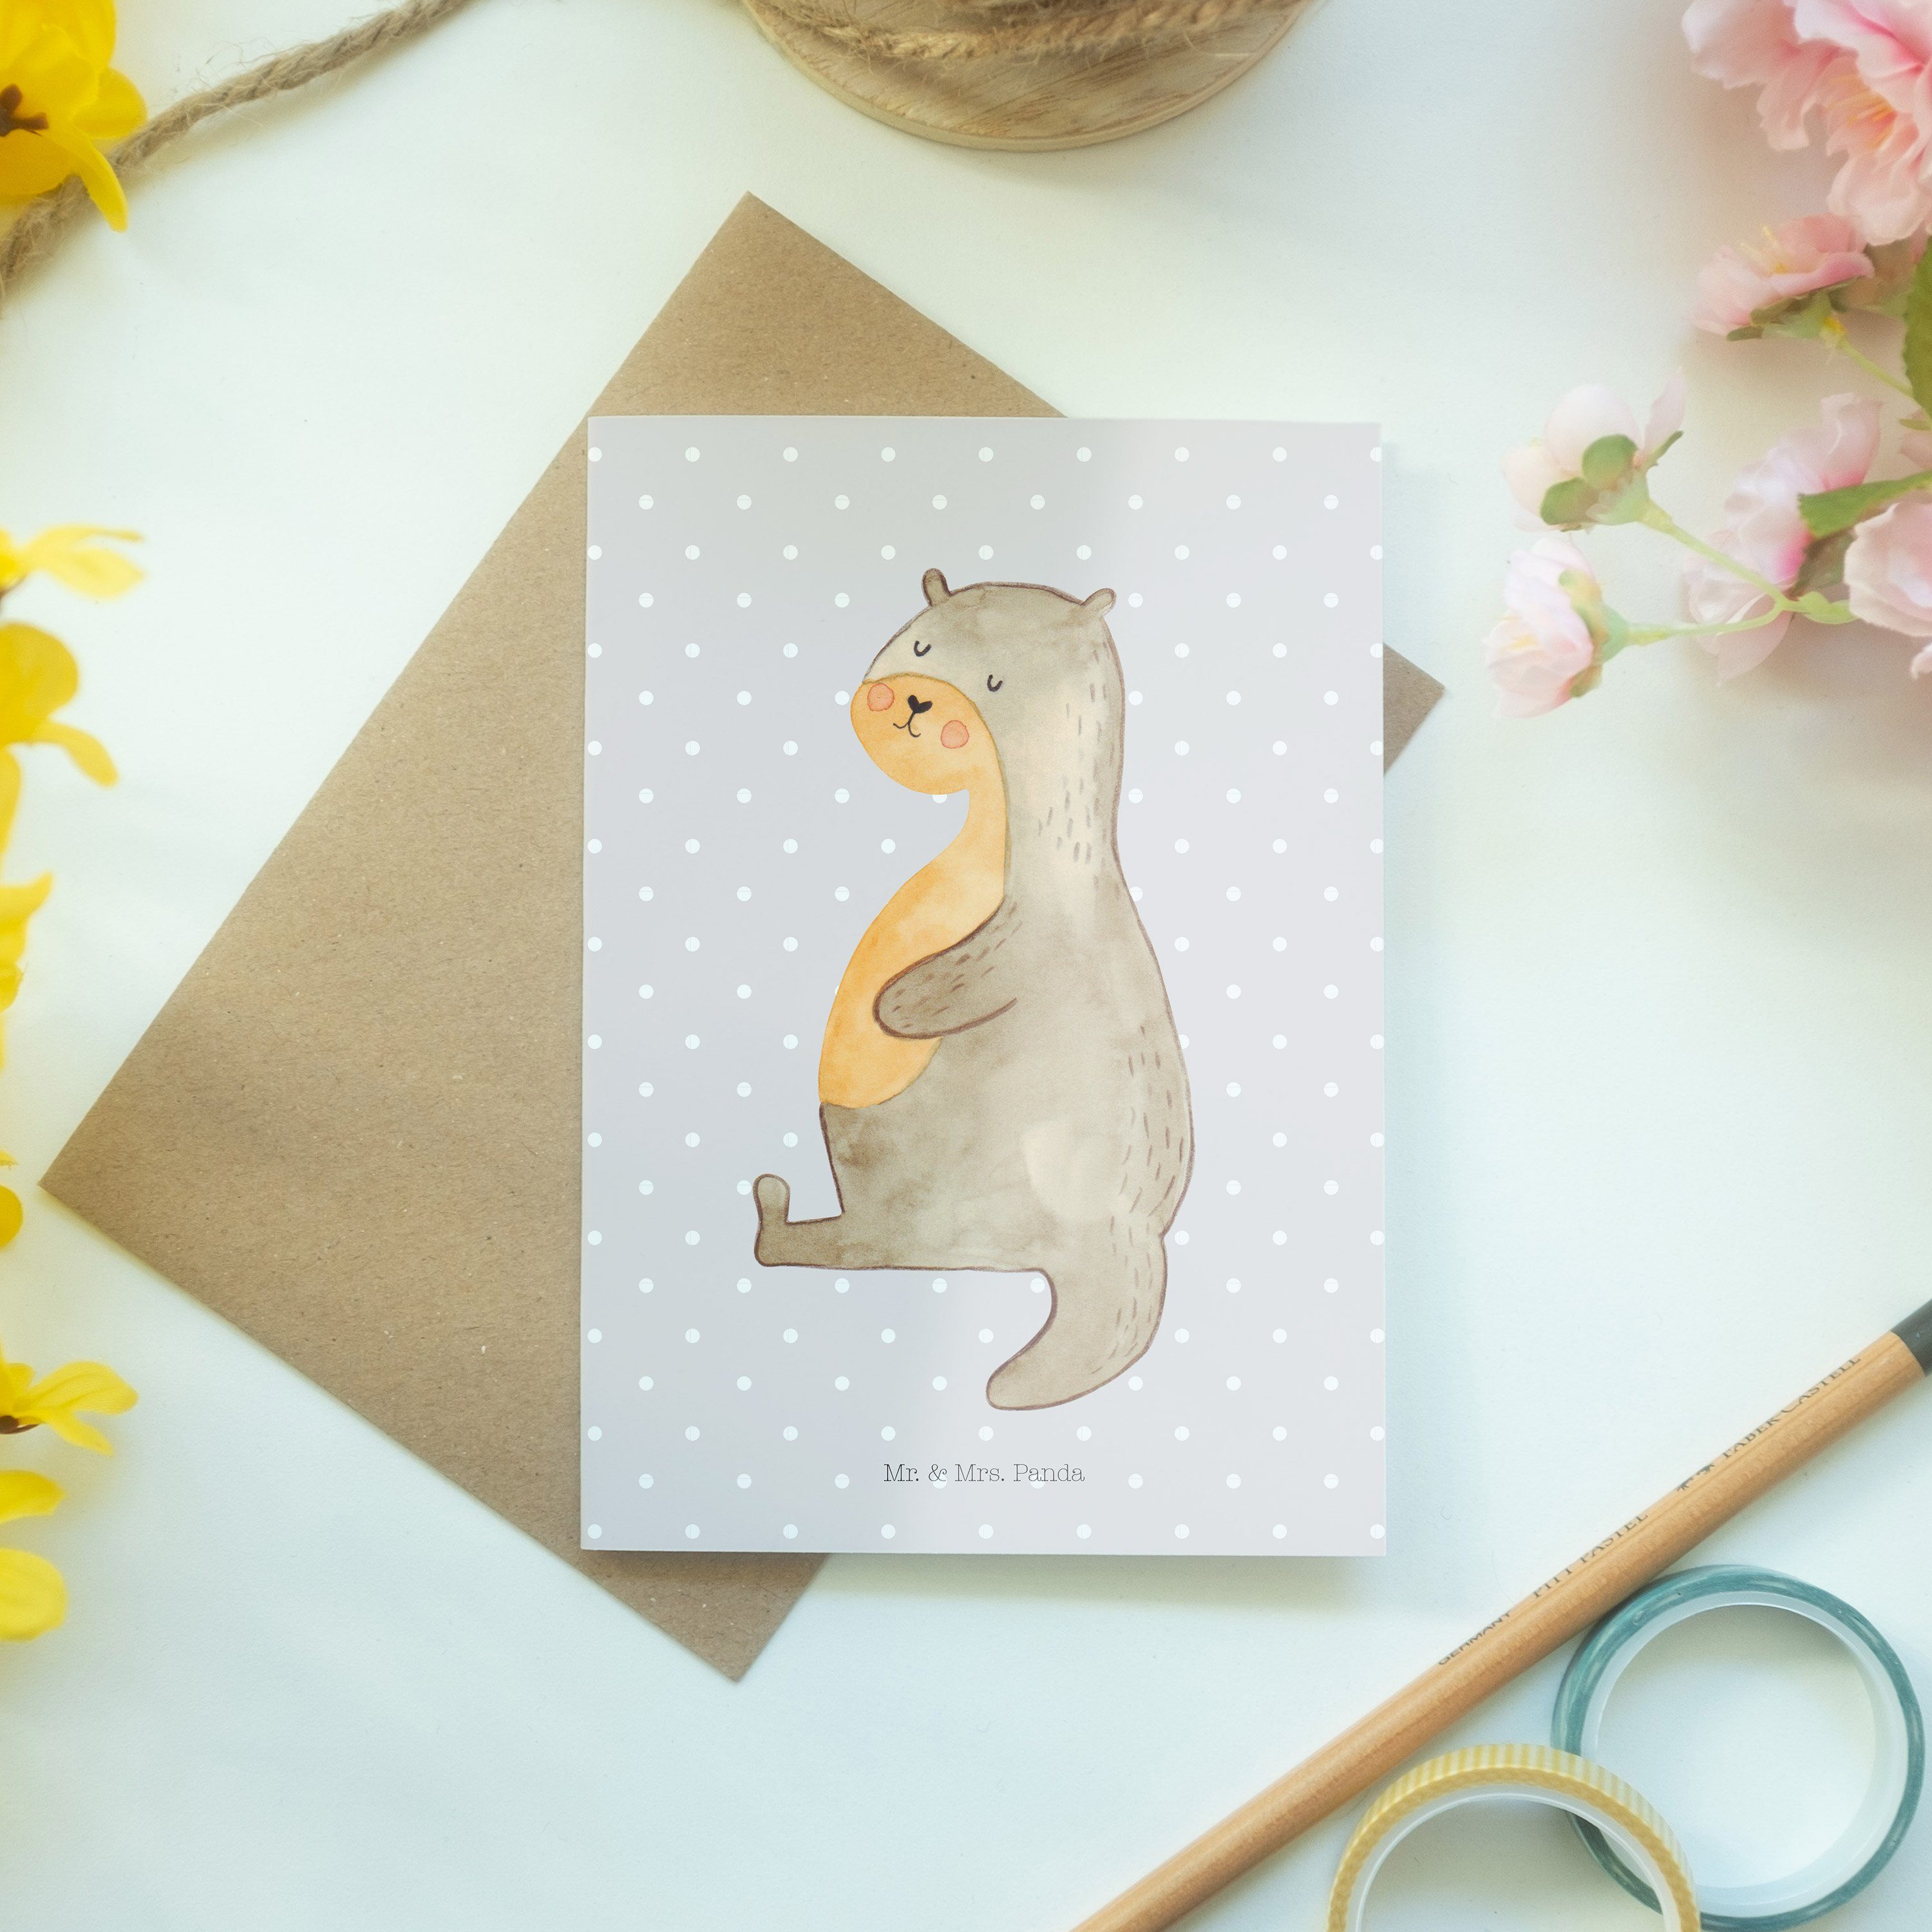 Mr. & Mrs. Panda Grußkarte Geschenk, Otter Pastell - Grau Sp - Bauch Fischotter, Hochzeitskarte